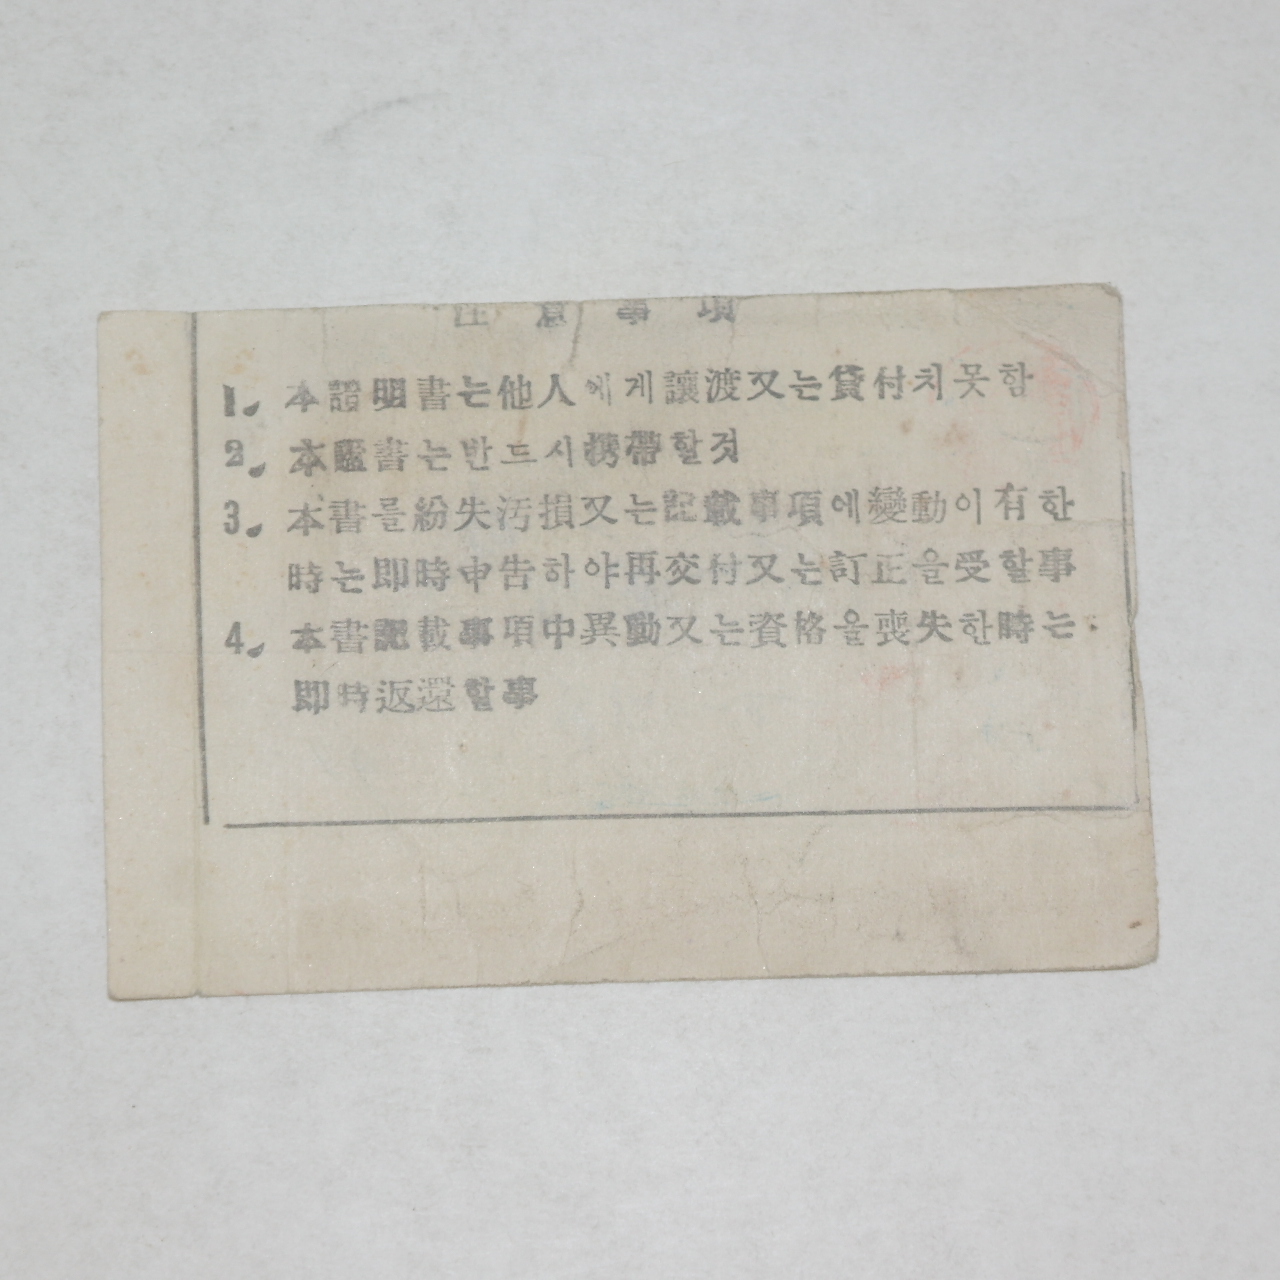 1954년 전남화순 국민반장증(國民班長證)